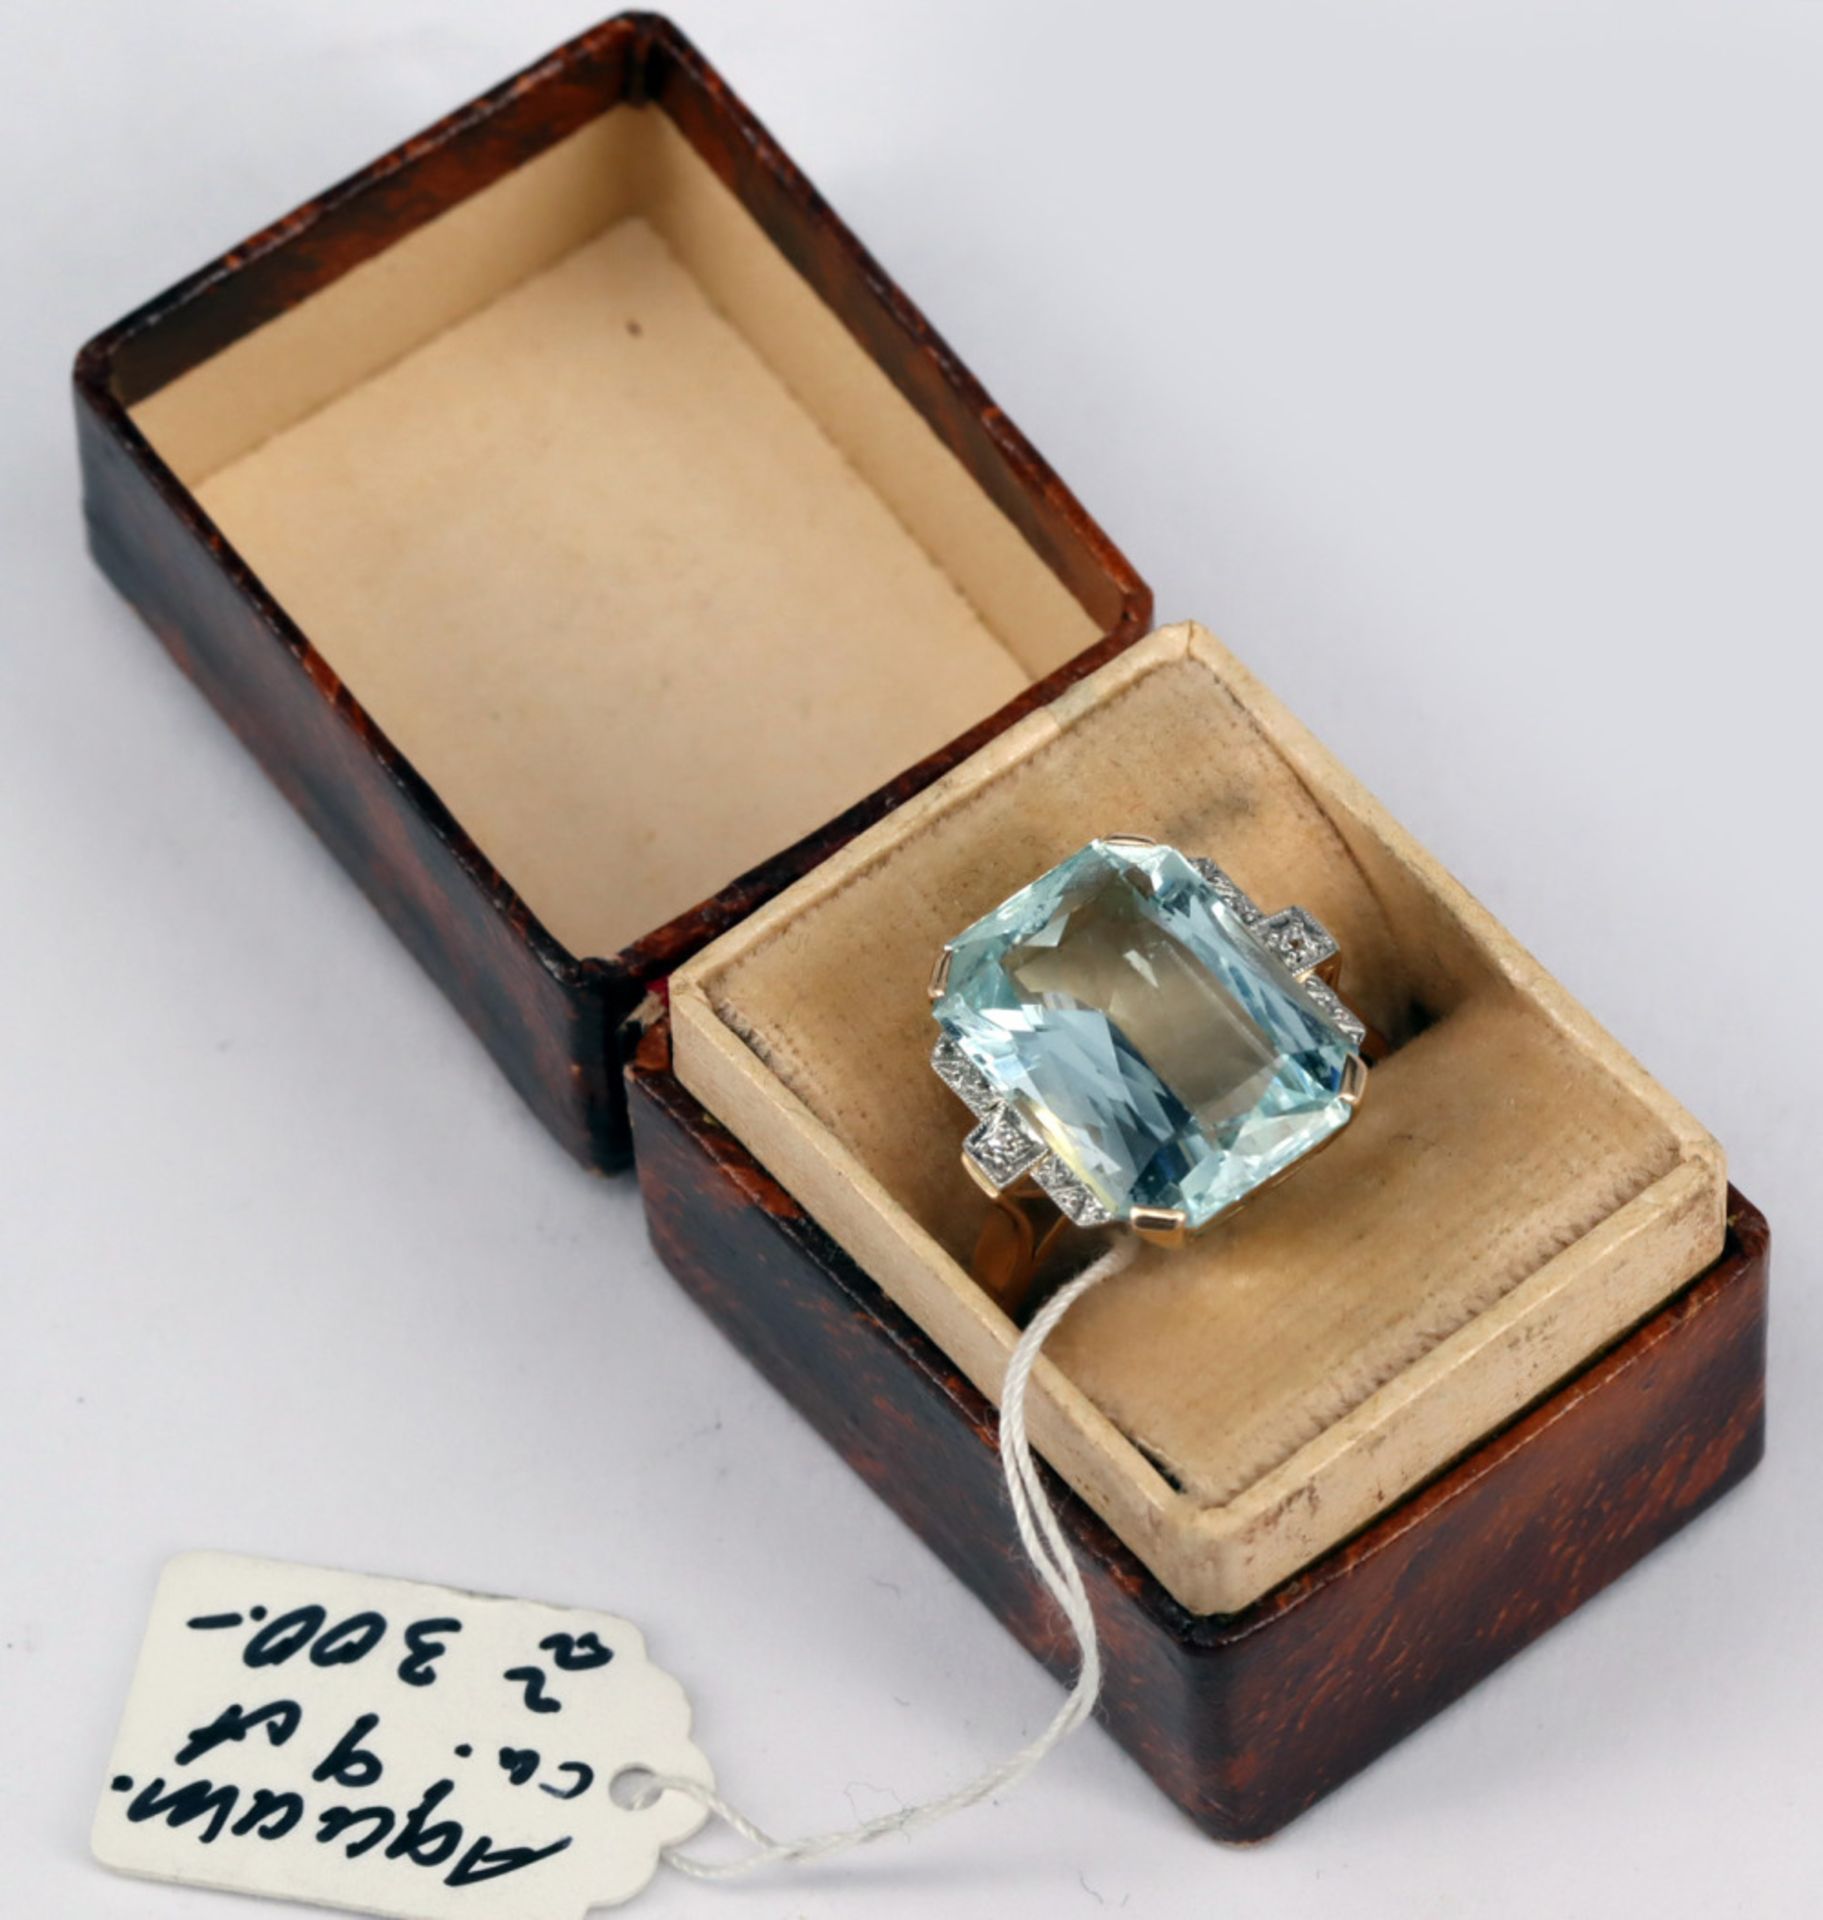 Ring, 585er GG, mit großem Aquamarin ca. 9 ct, seitlich mit Diamanten gefasst, Altersspuren, RG56 - Image 5 of 5